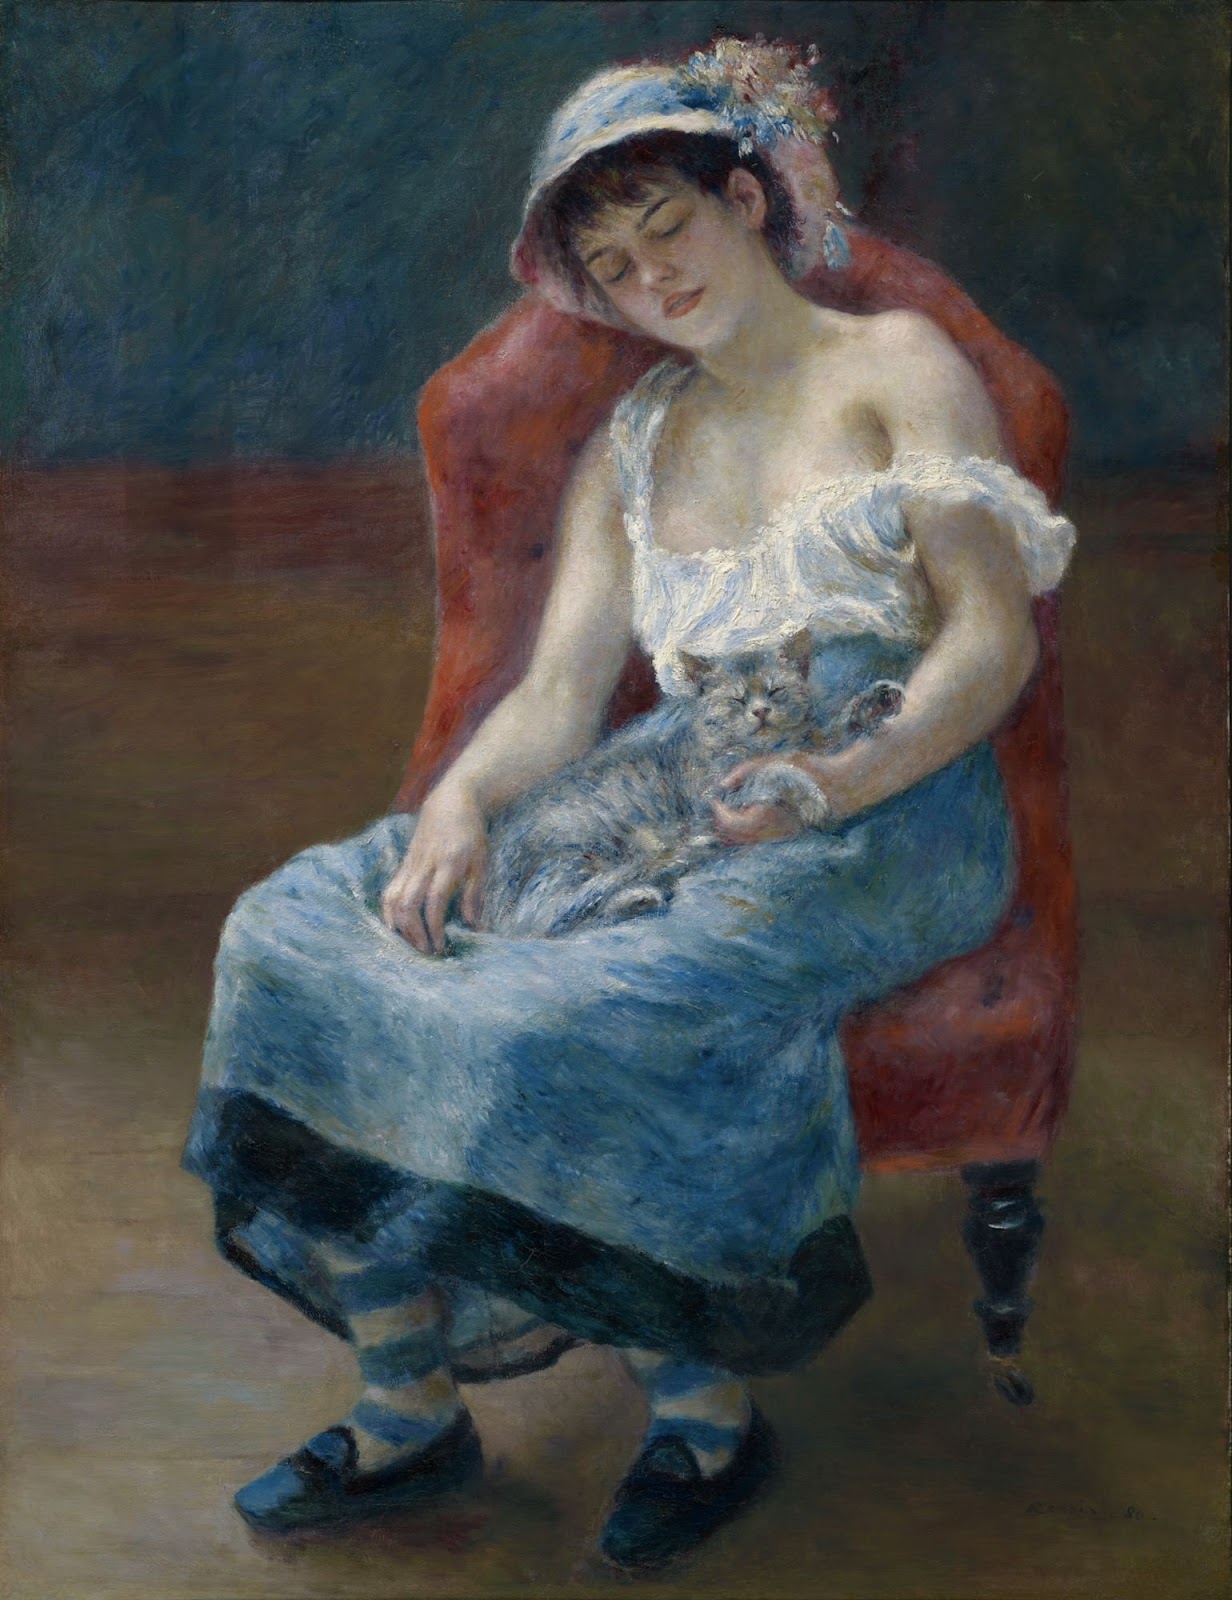 Pierre+Auguste+Renoir-1841-1-19 (868).jpg